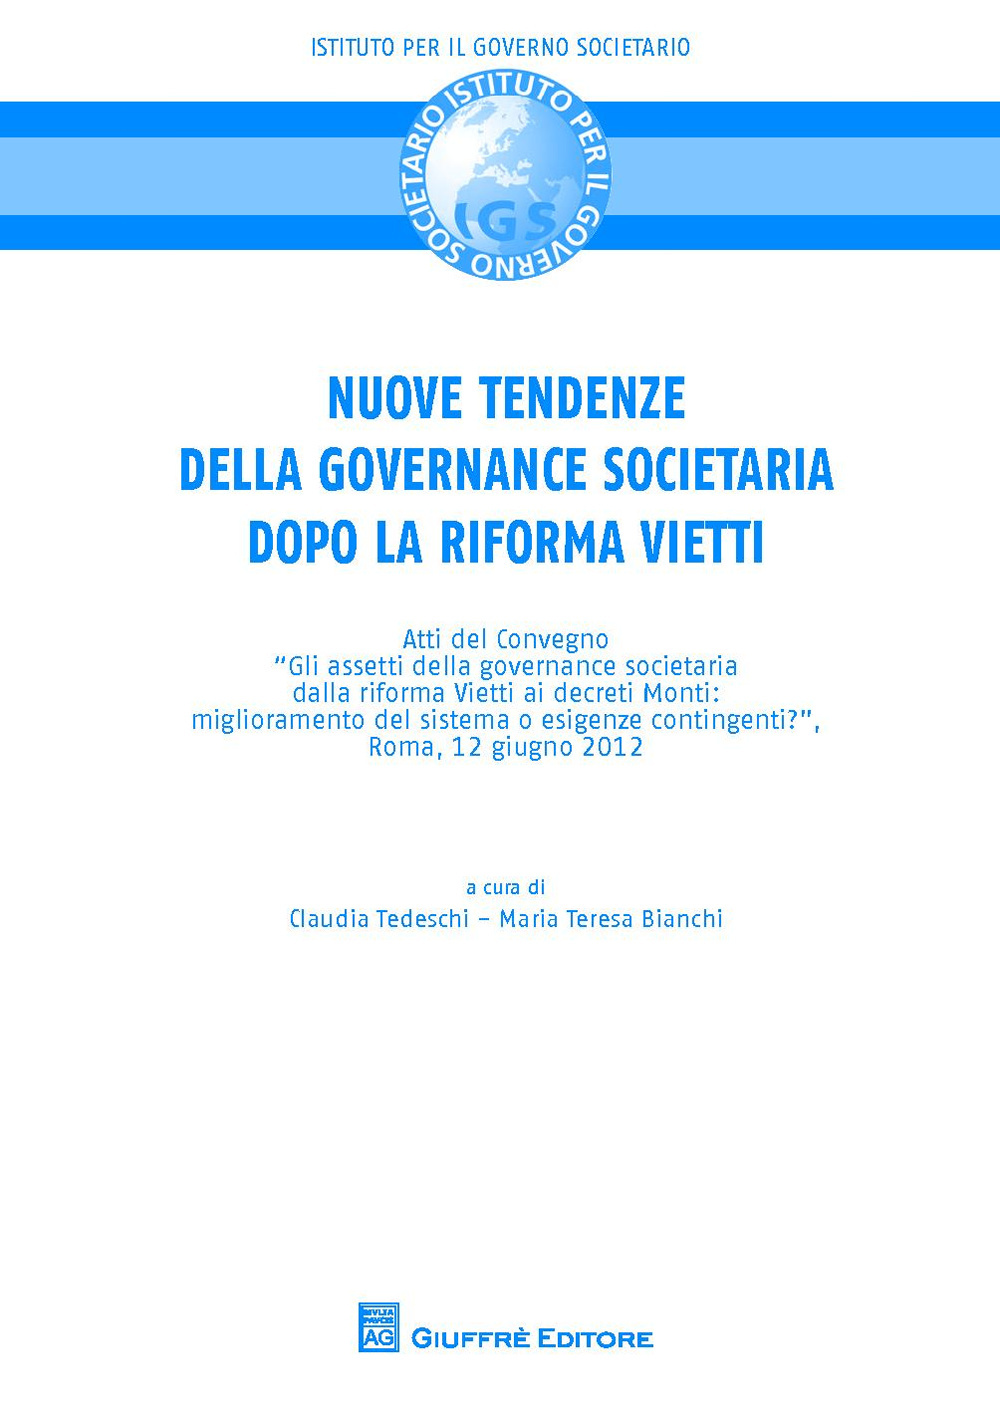 Nuove tendenze nella governance societaria dopo la riforma Vietti. Atti del Convegno (Roma, 12 giugno 2012)